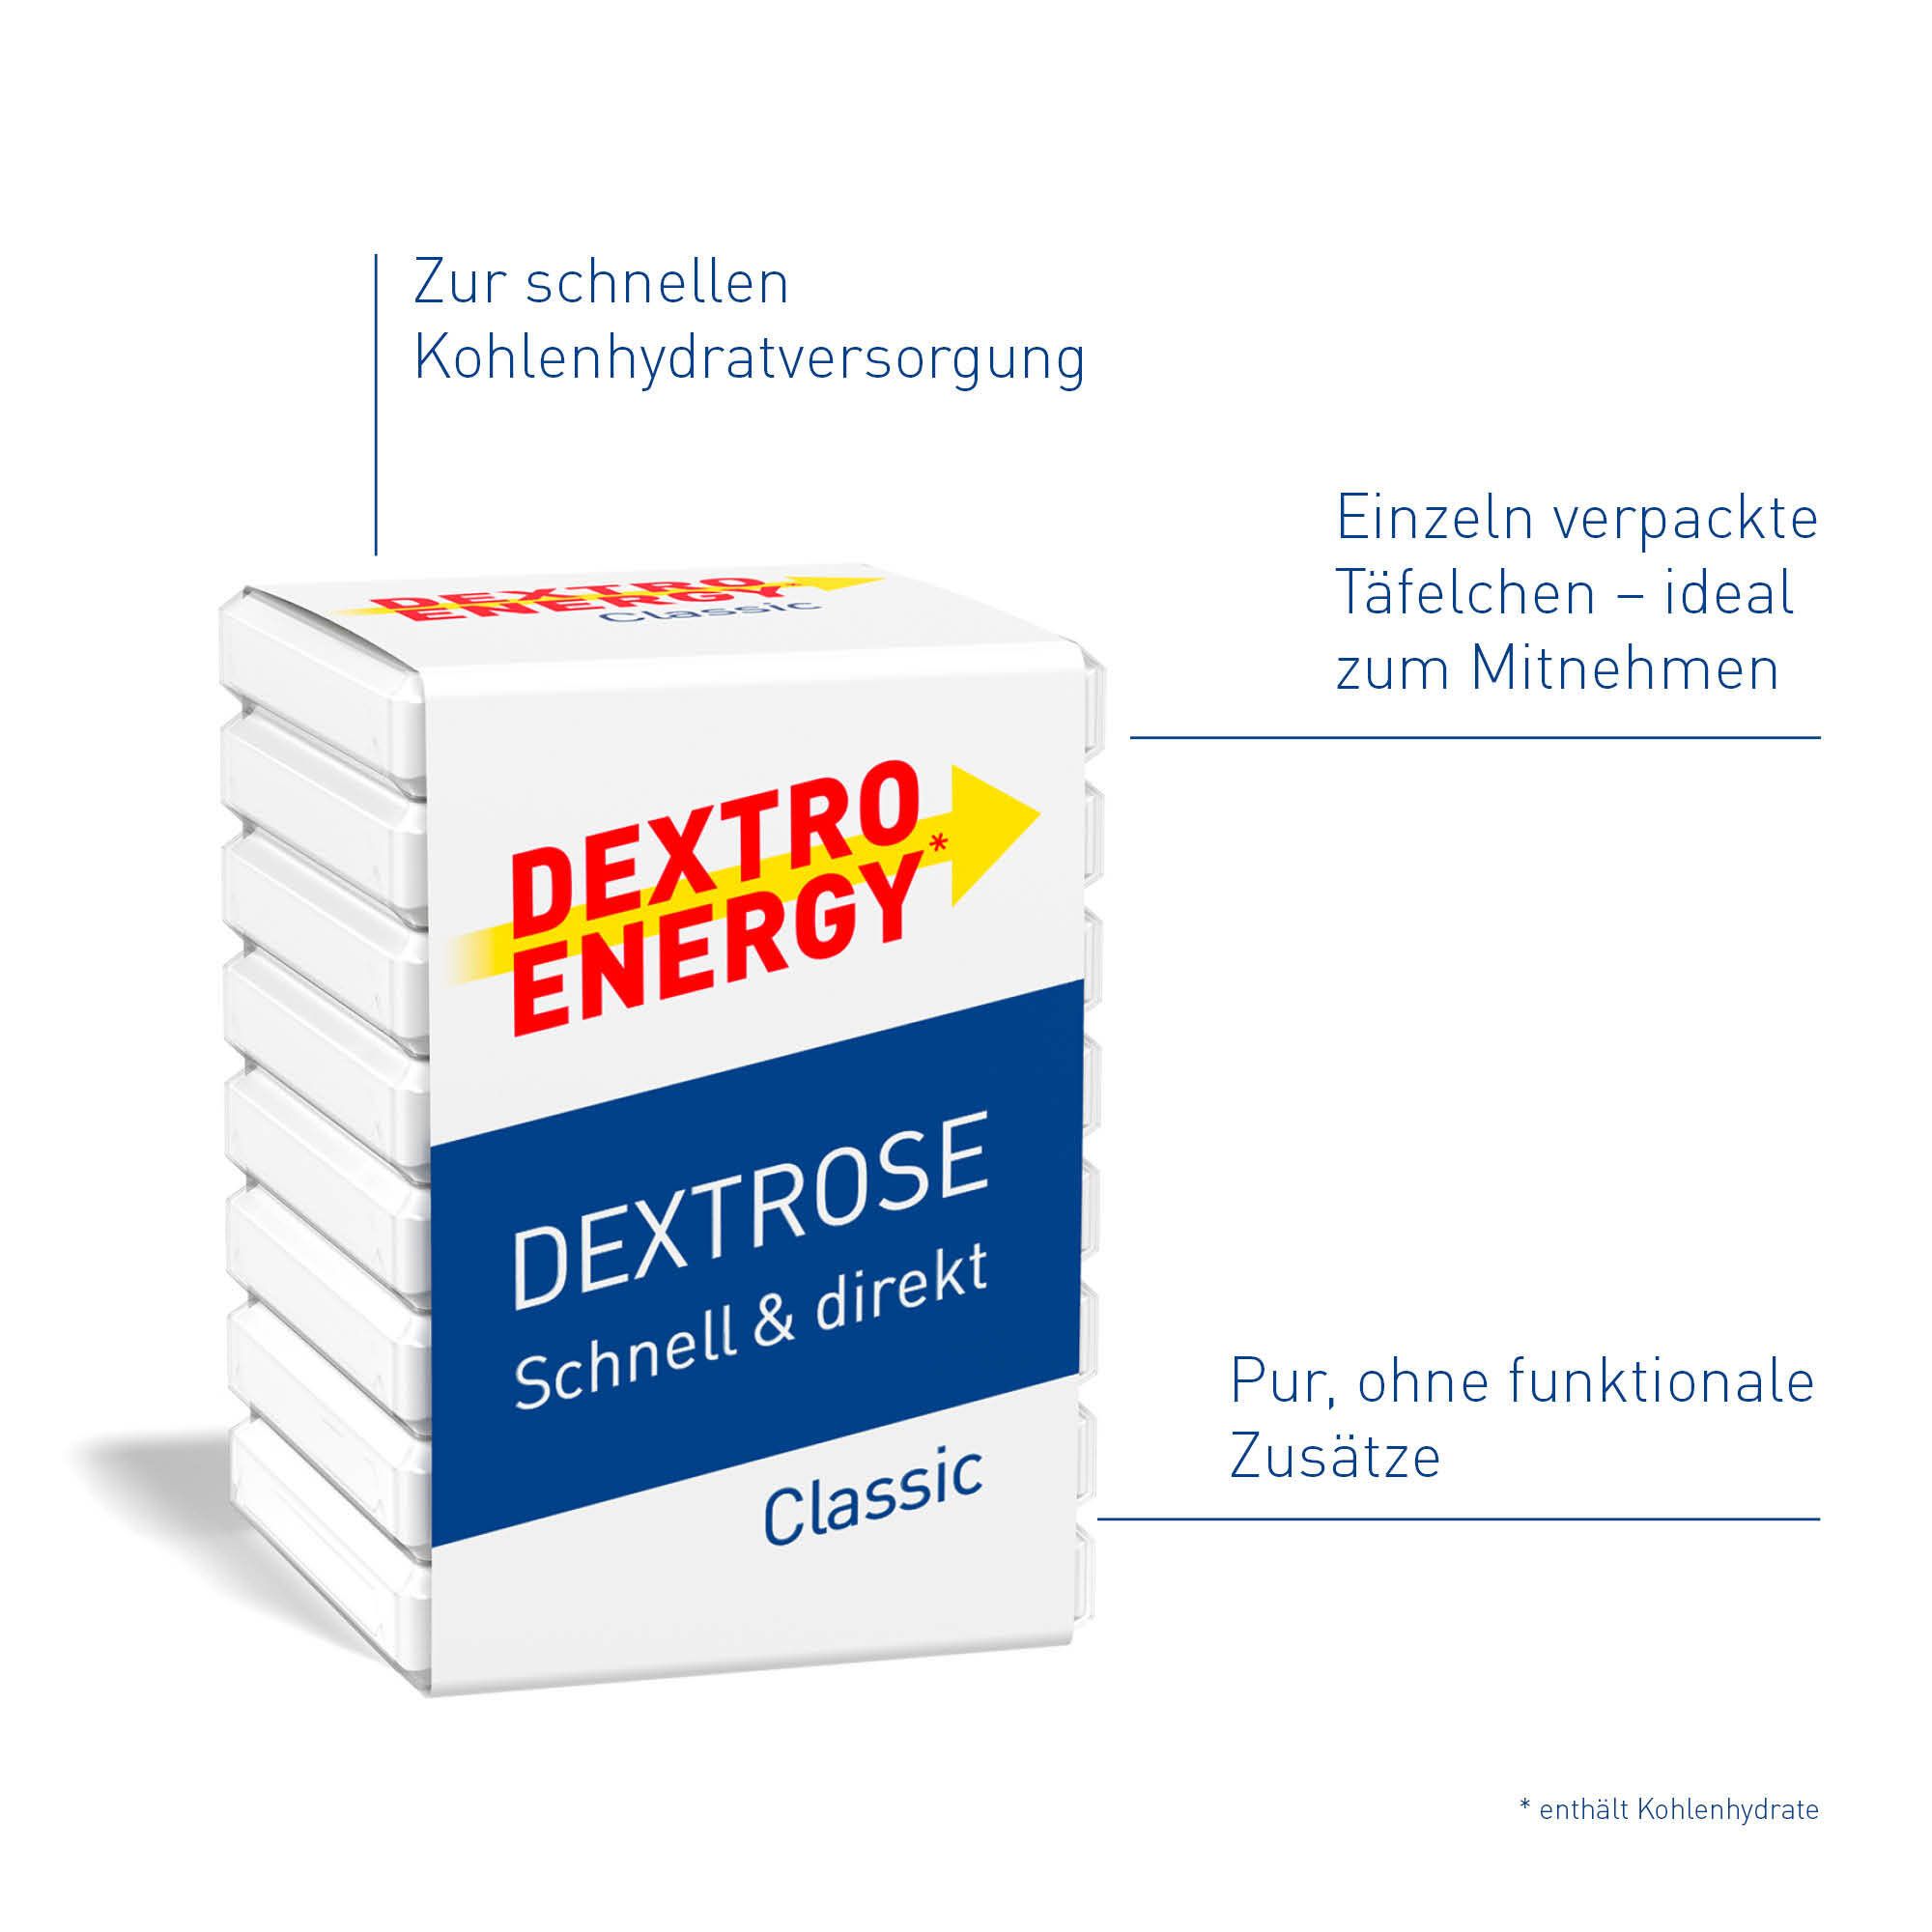 Dextro Energy classic Würfel